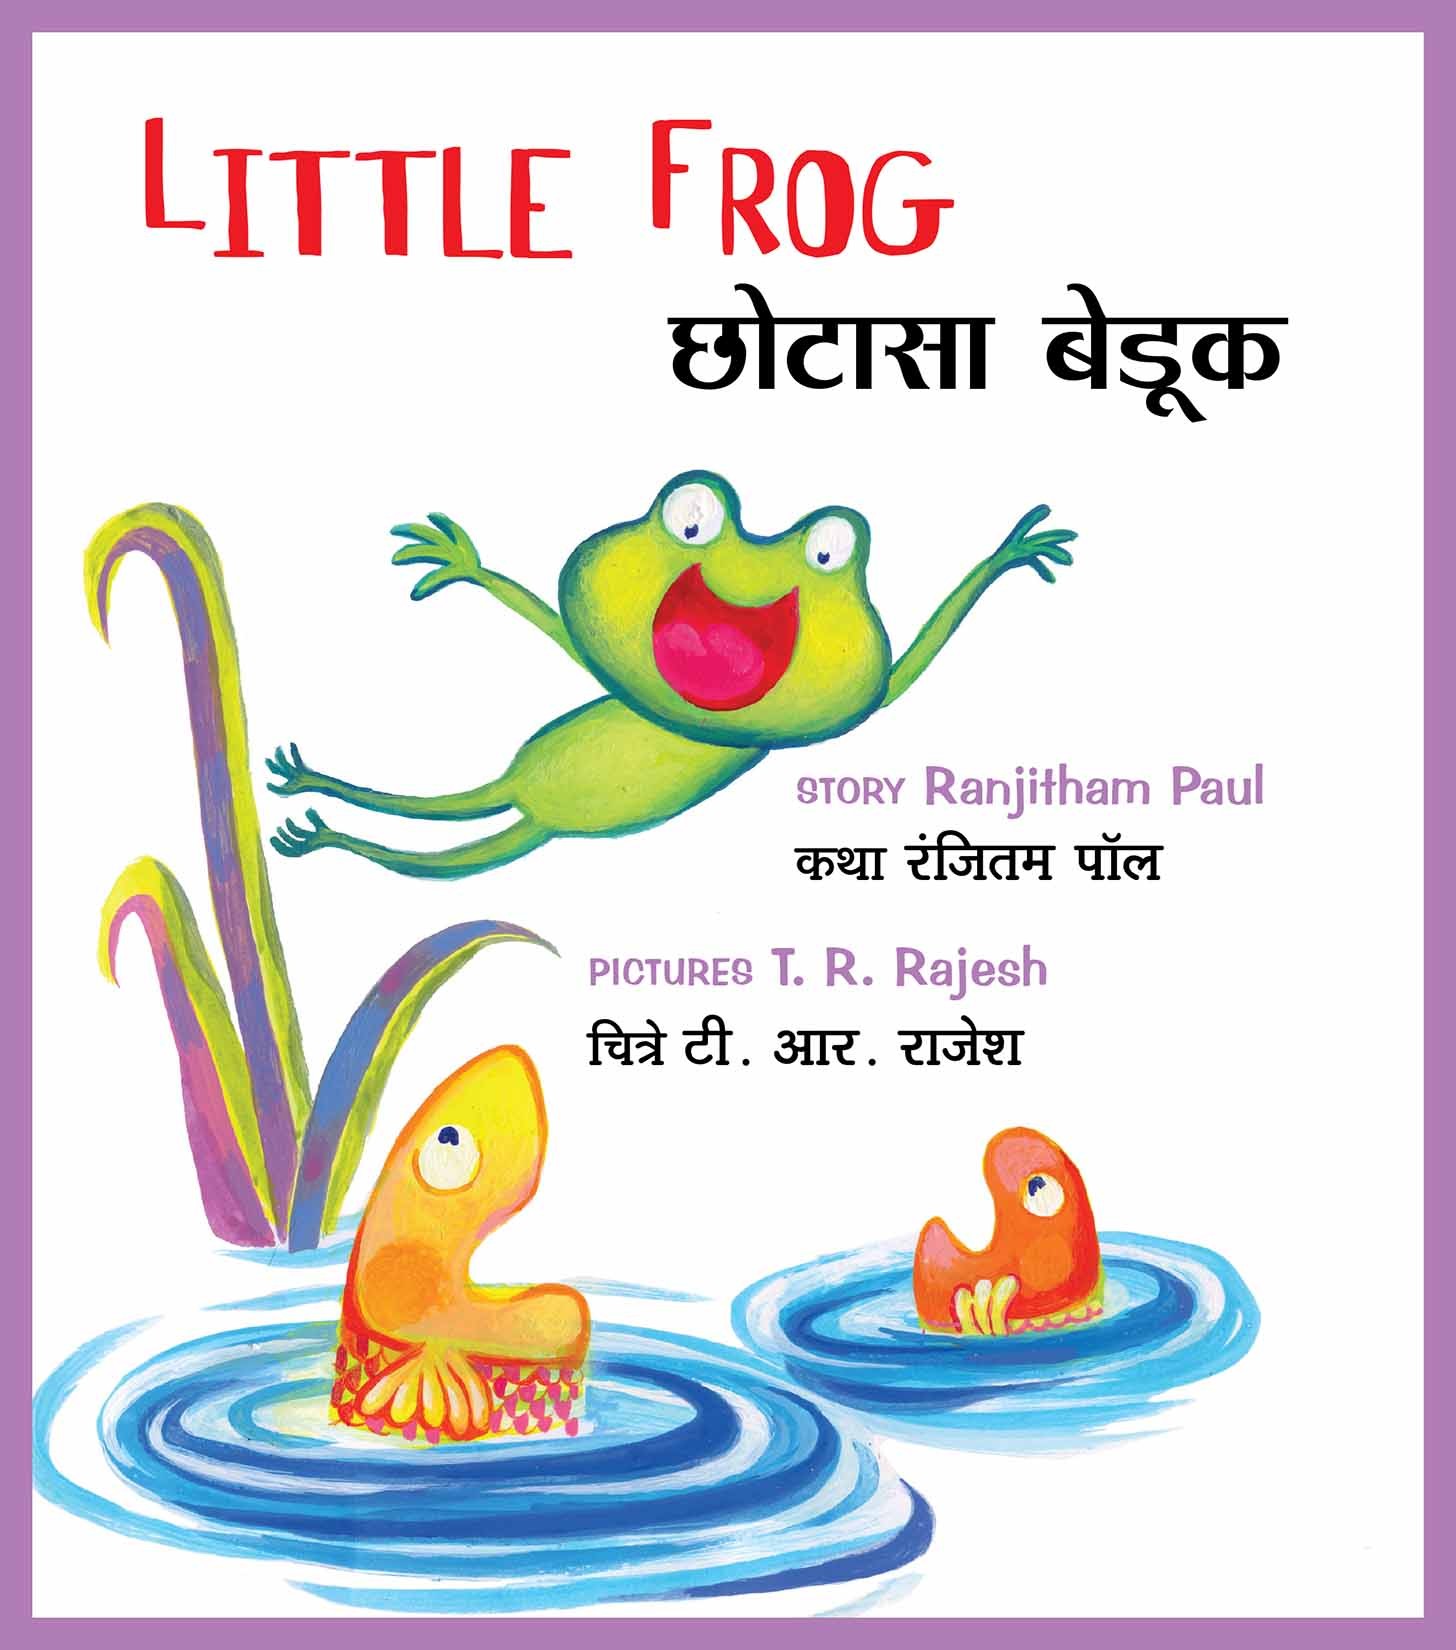 Little Frog/Chhotaasa Bedook (English-Marathi)